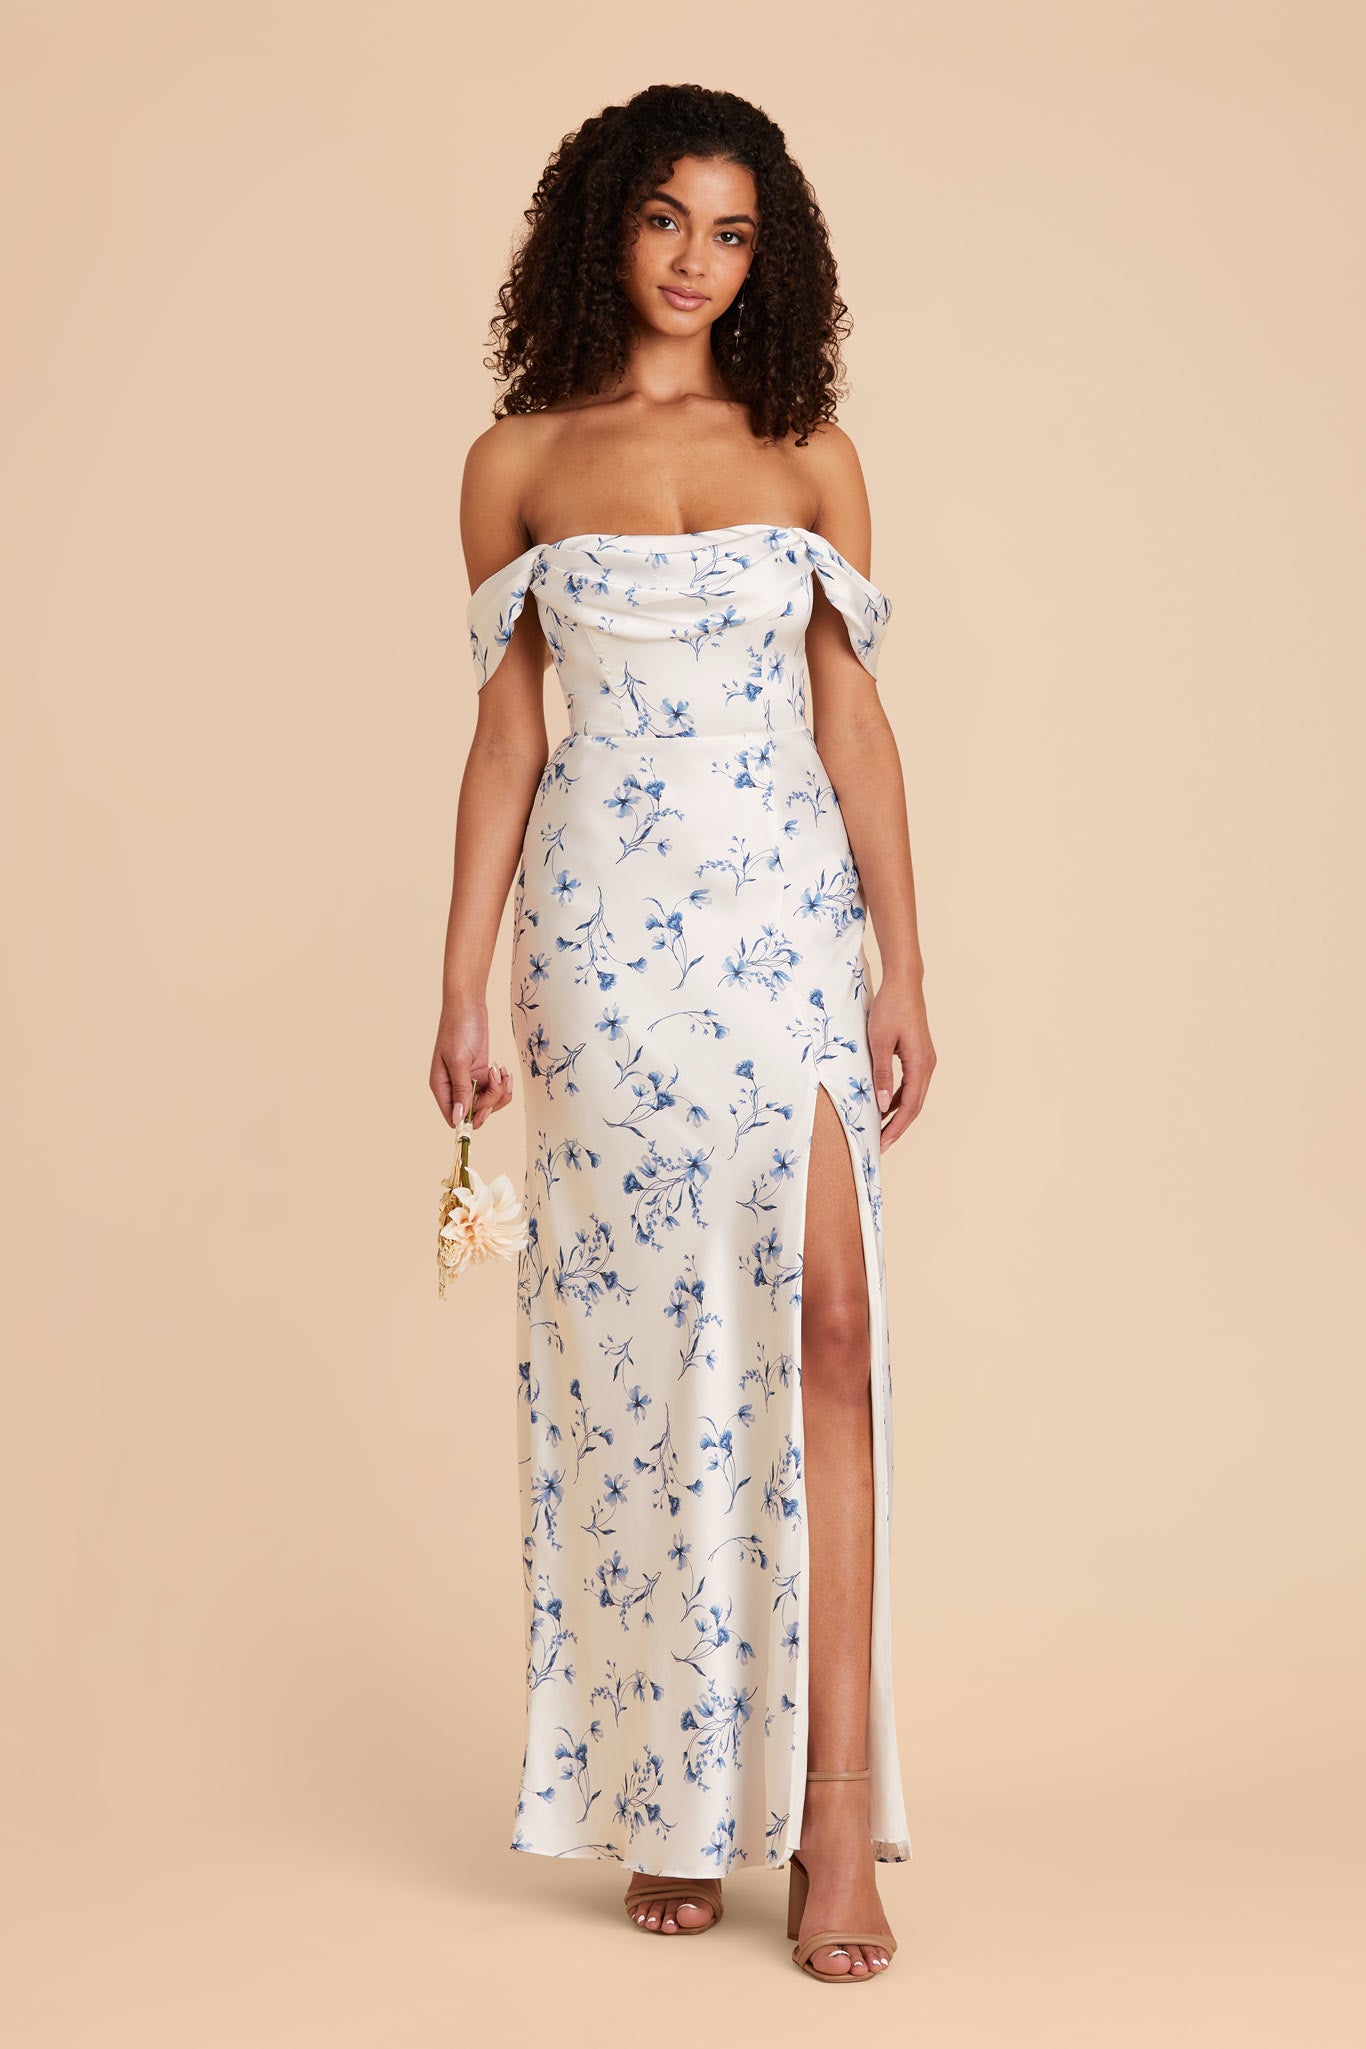 Blue Le Fleur Mia Matte Satin Convertible Dress by Birdy Grey